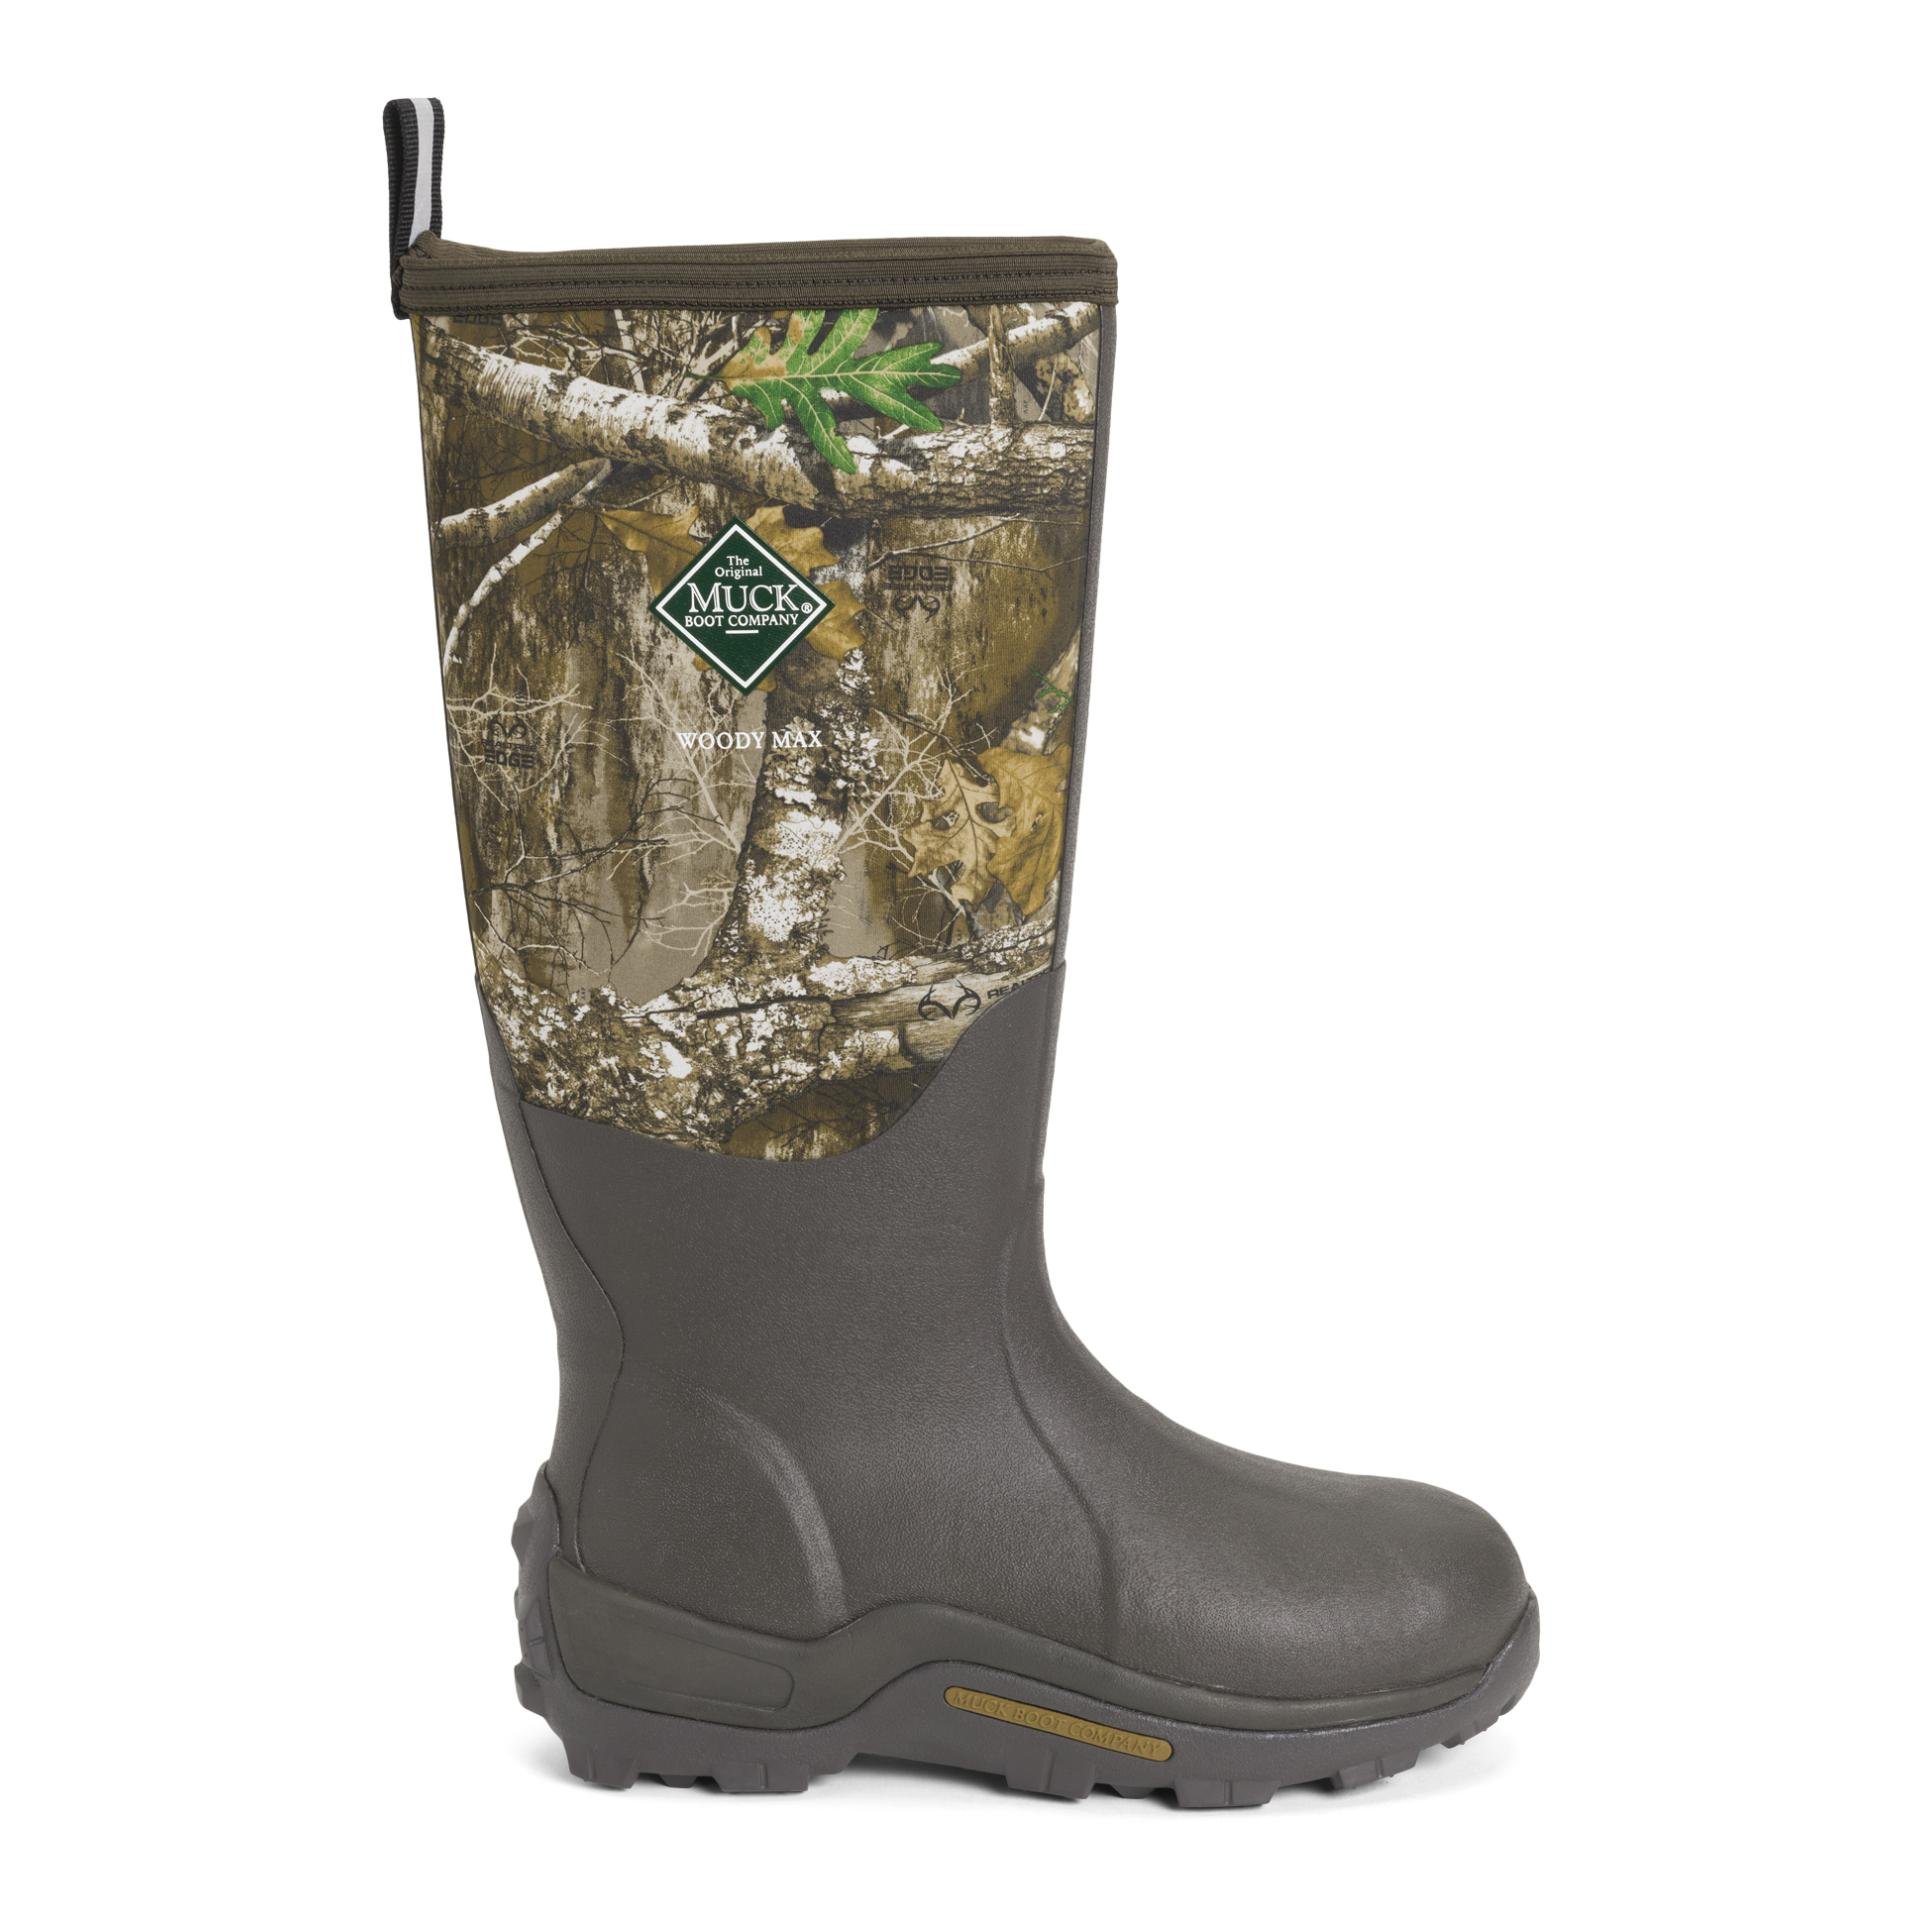 The Original Muck Boot Company Gummistiefel Herren Woody Max - Camouflage -